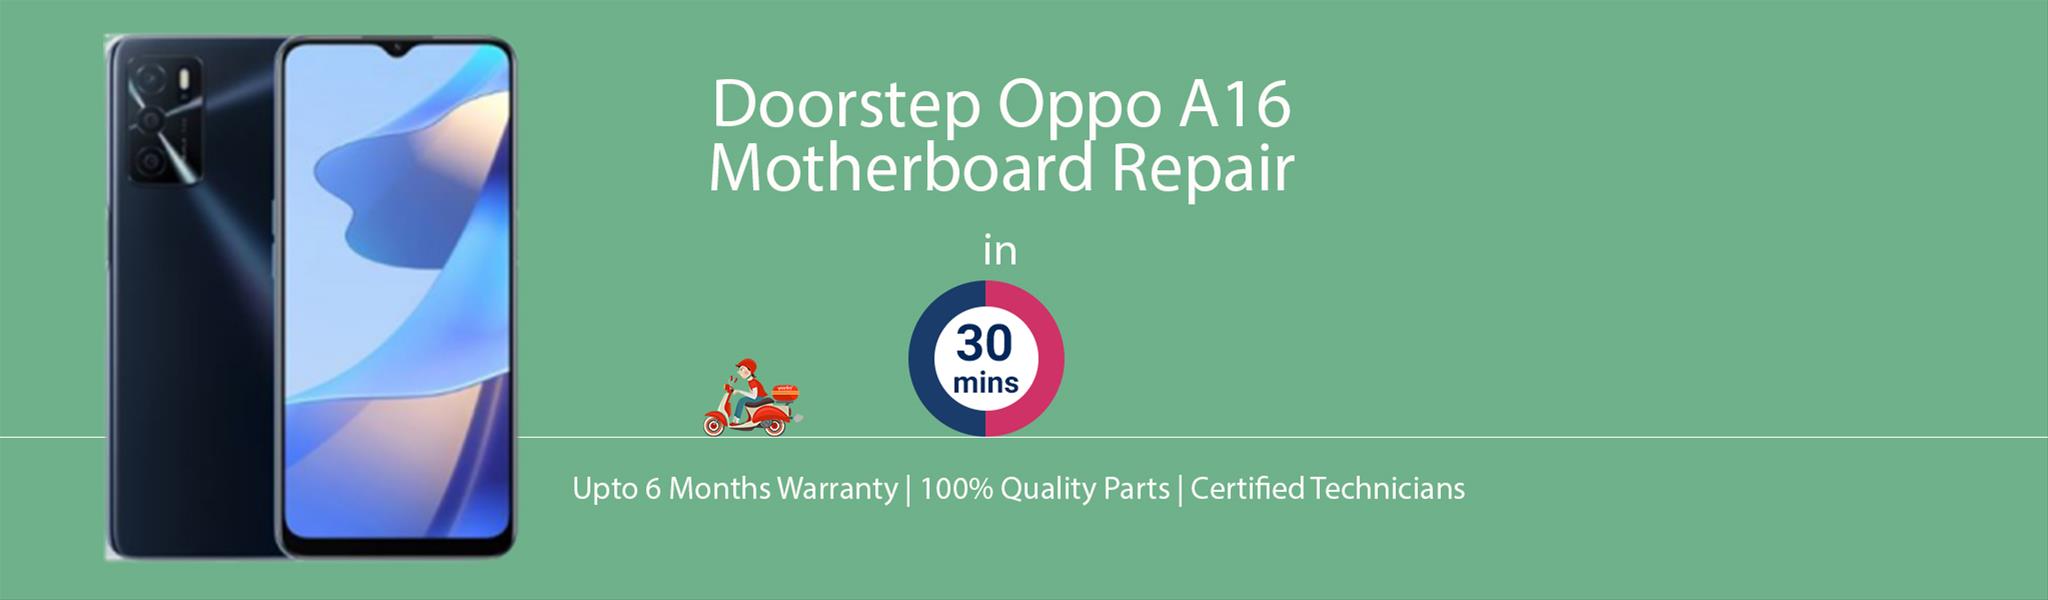 oppo-a16-motherboard-repair-banner.jpg